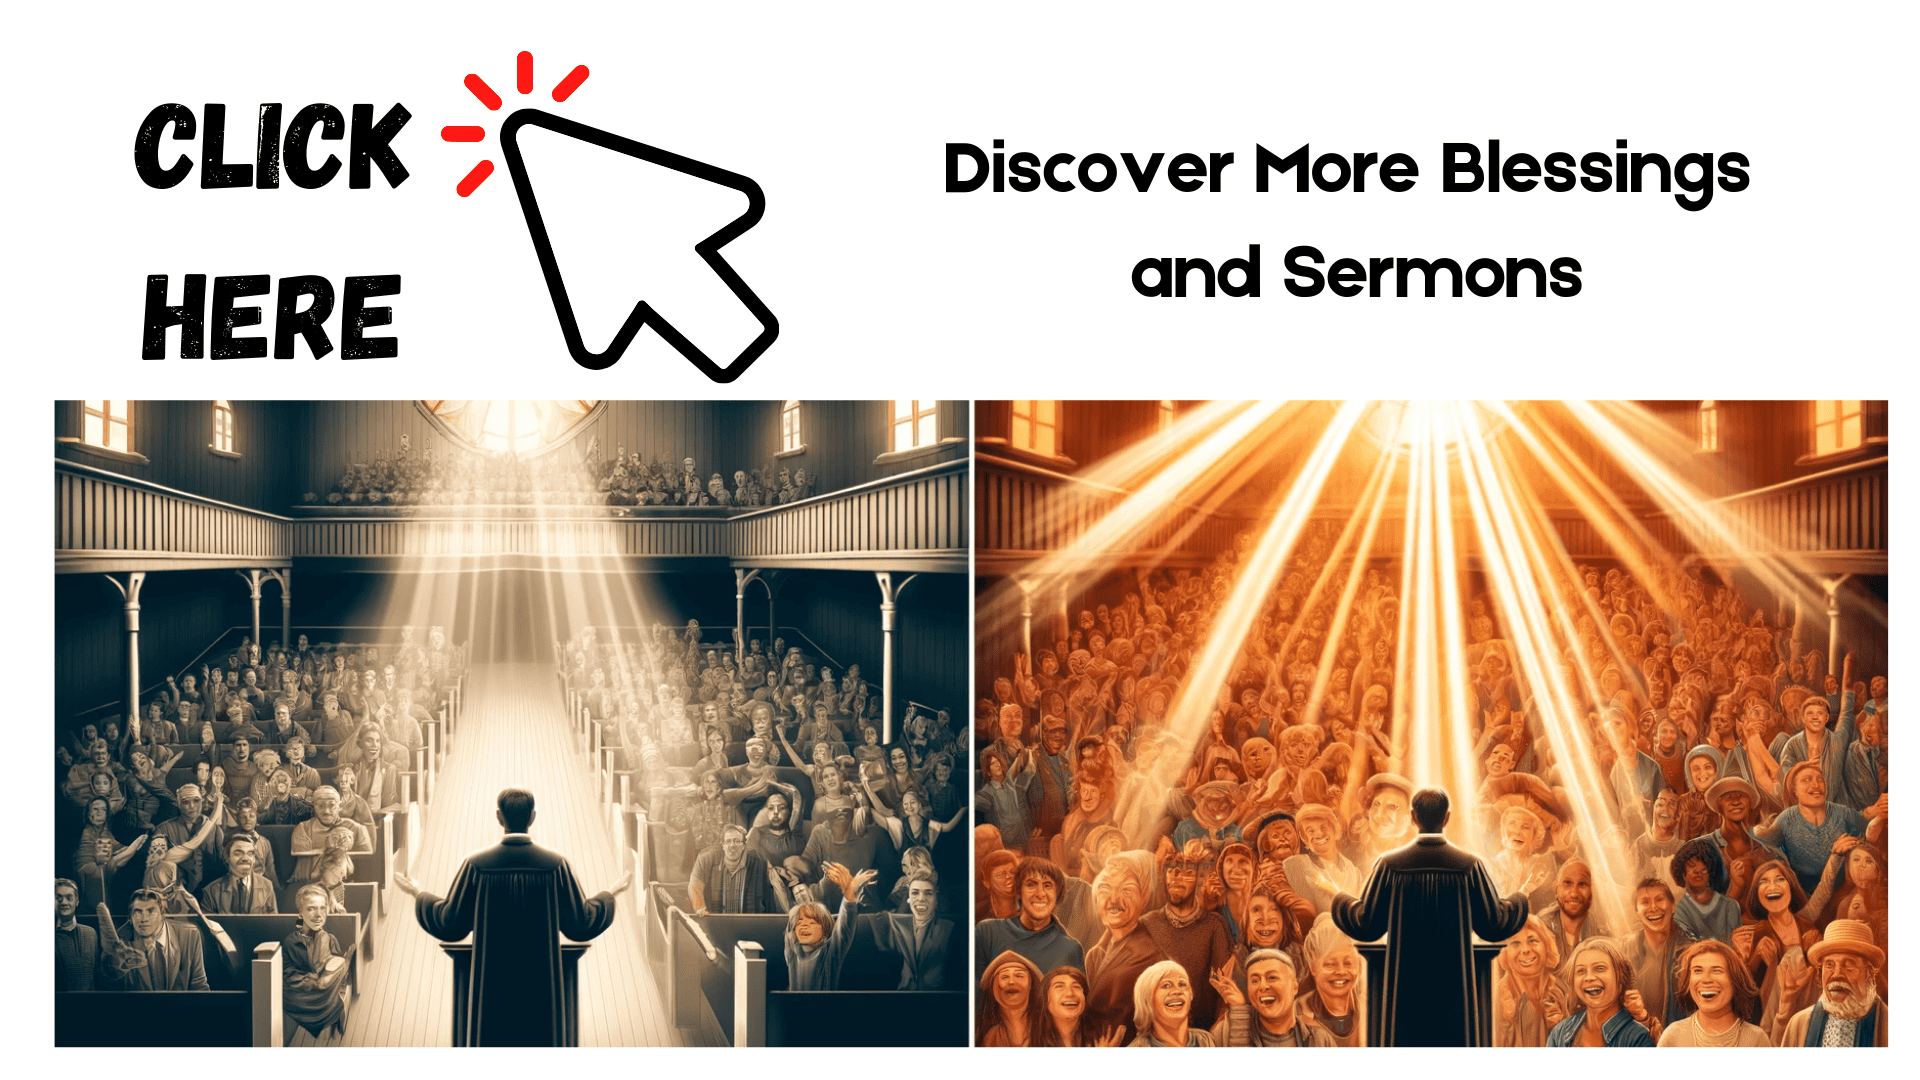 Bulletpoint sermon summaries